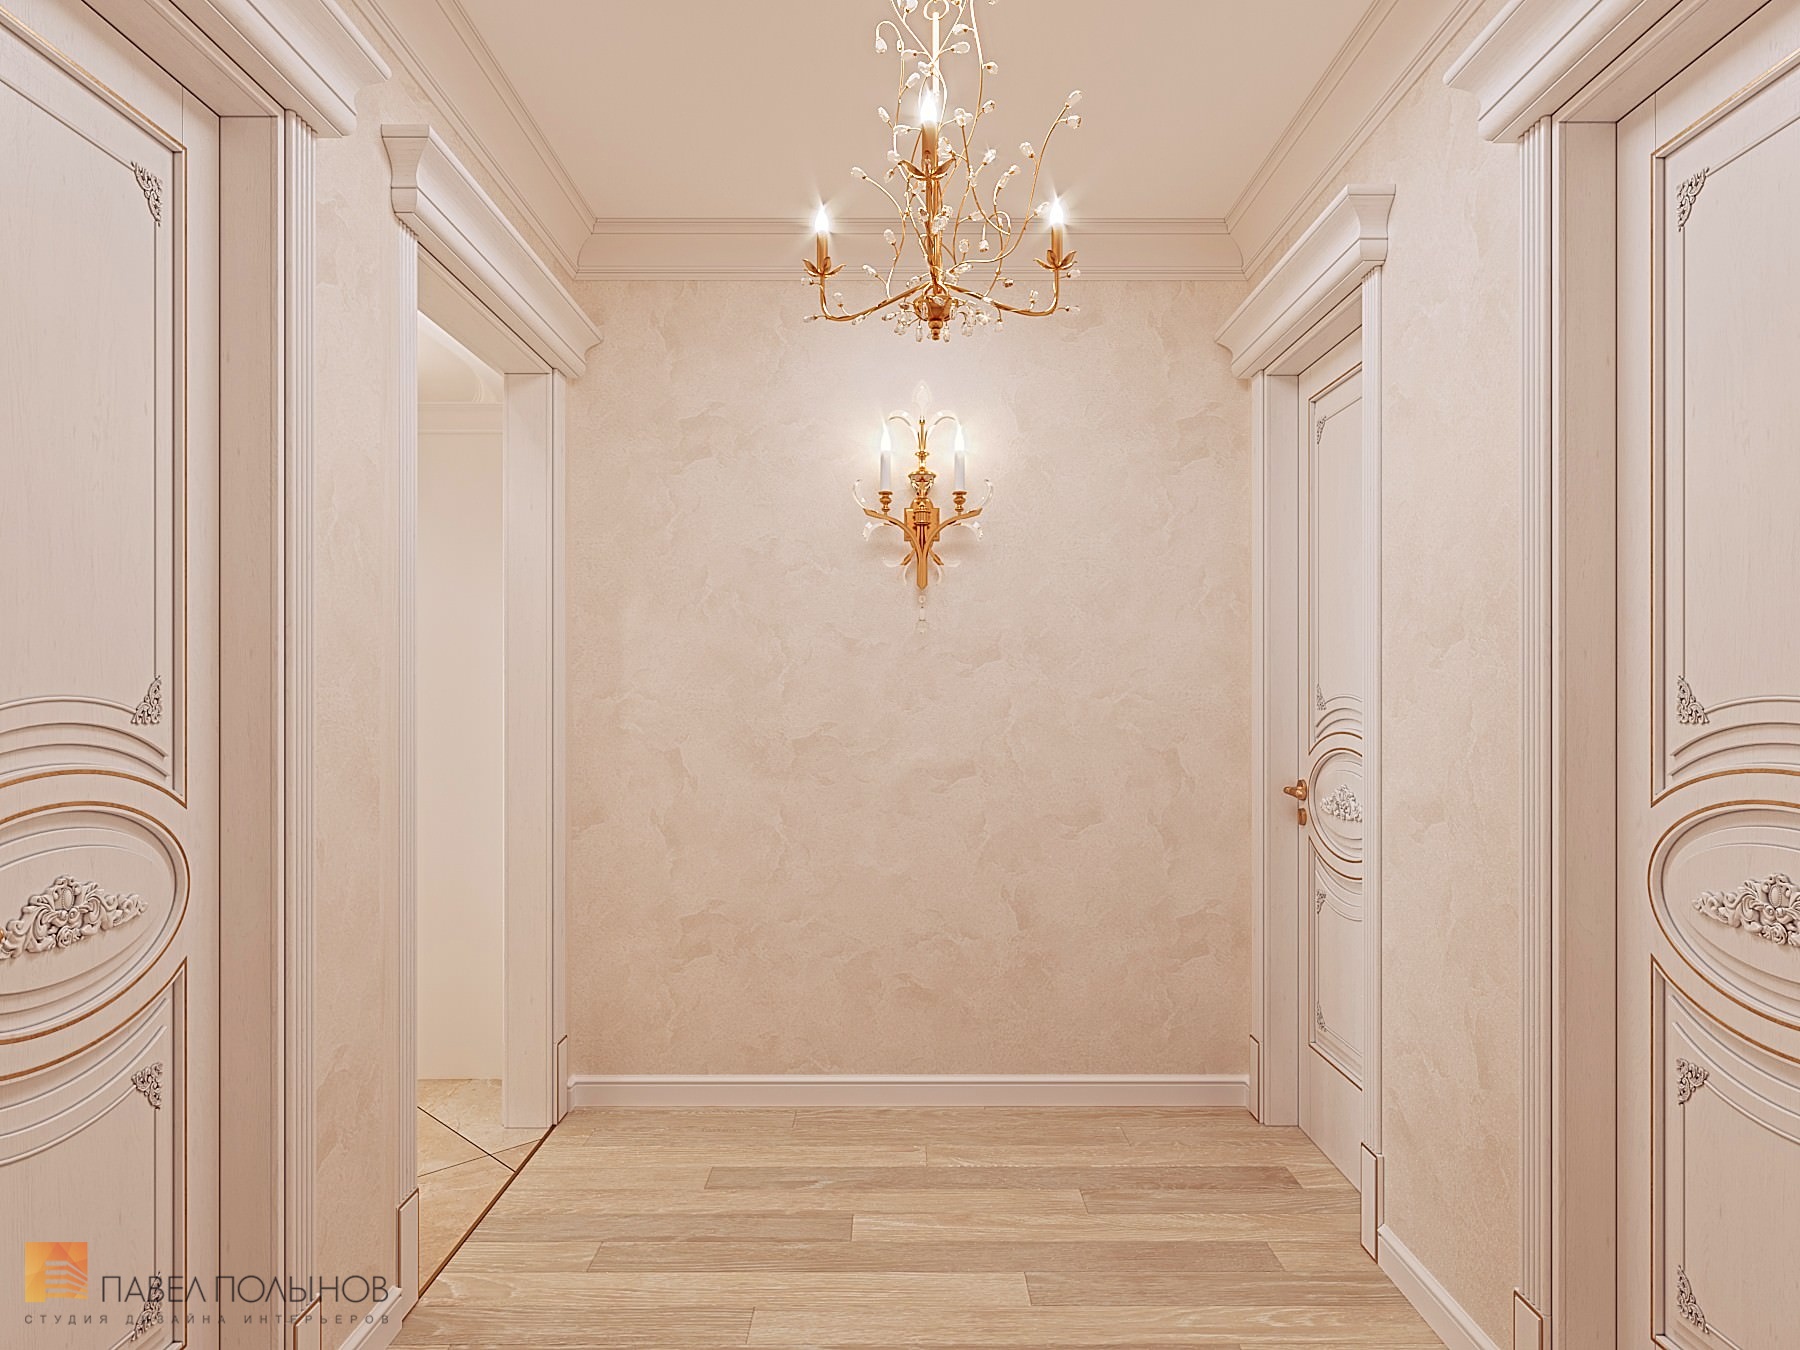 Фото дизайн интерьера холла из проекта «Квартира в классическом стиле в ЖК «Русский дом», 144 кв.м.»